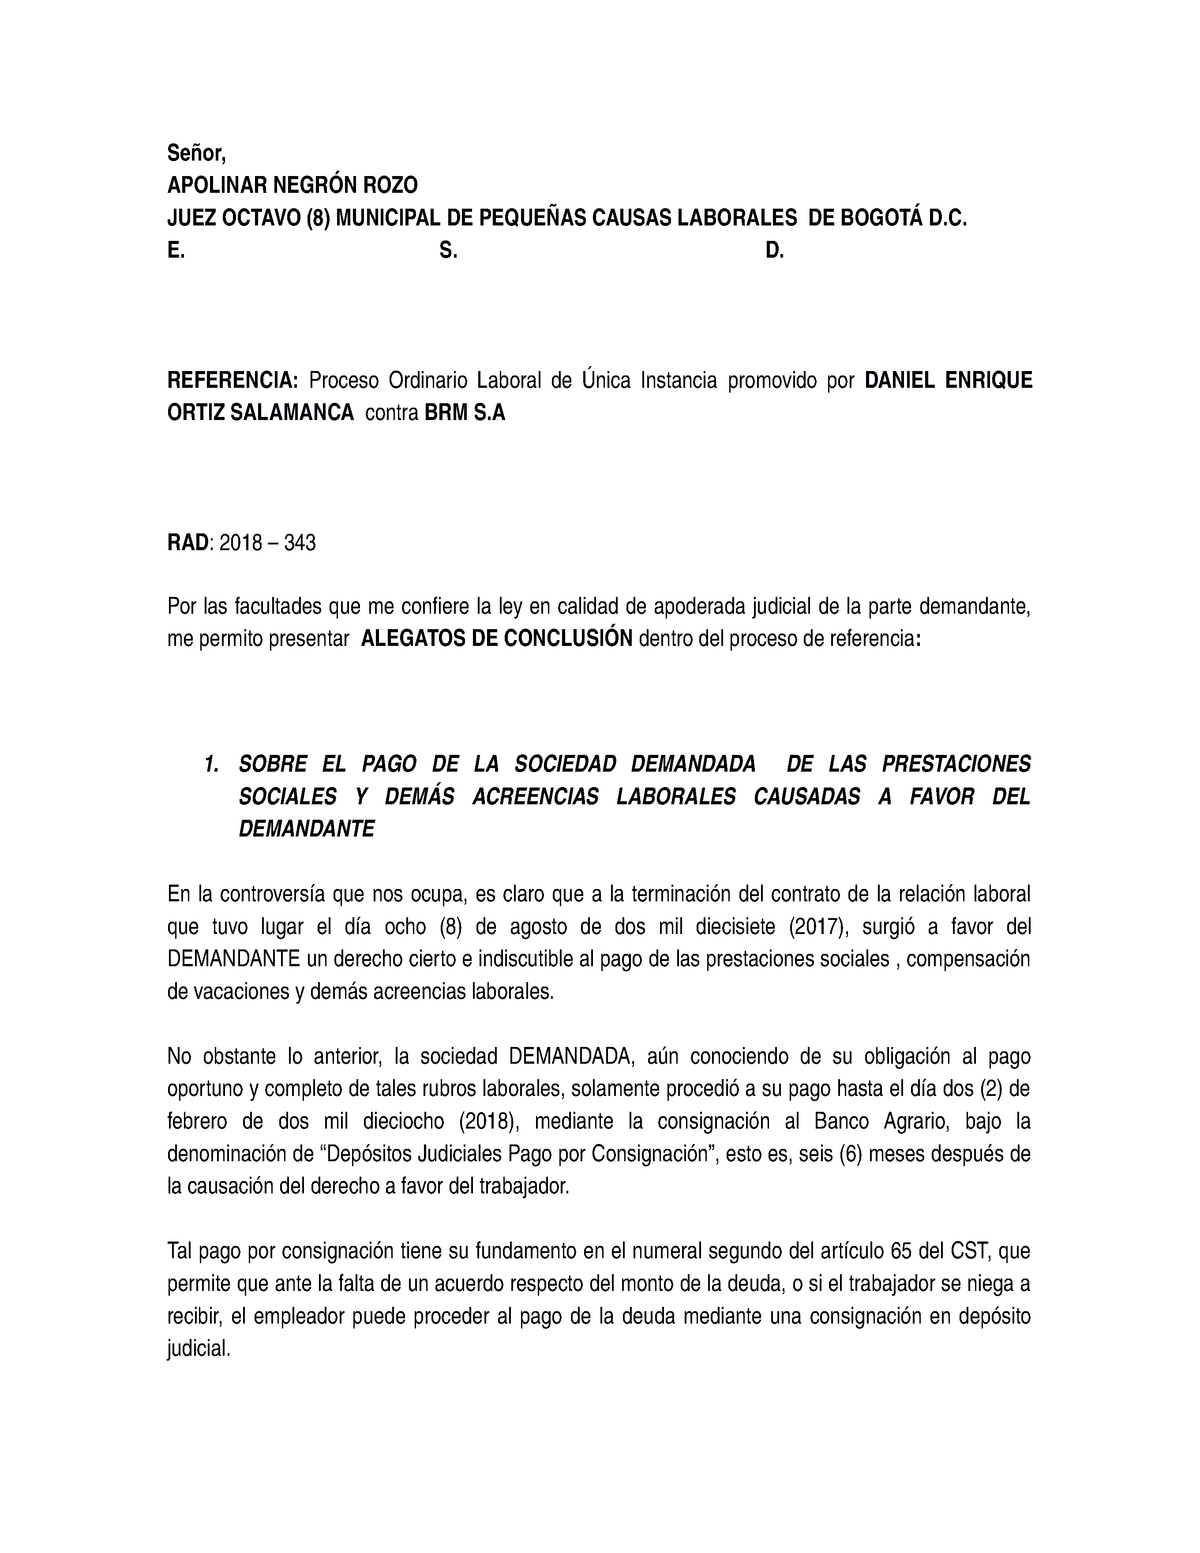 Alegatos DE Conclusión Danilo Ortiz - APOLINAR ROZO JUEZ OCTAVO (8)  MUNICIPAL DE CAUSAS LABORALES DE - Studocu